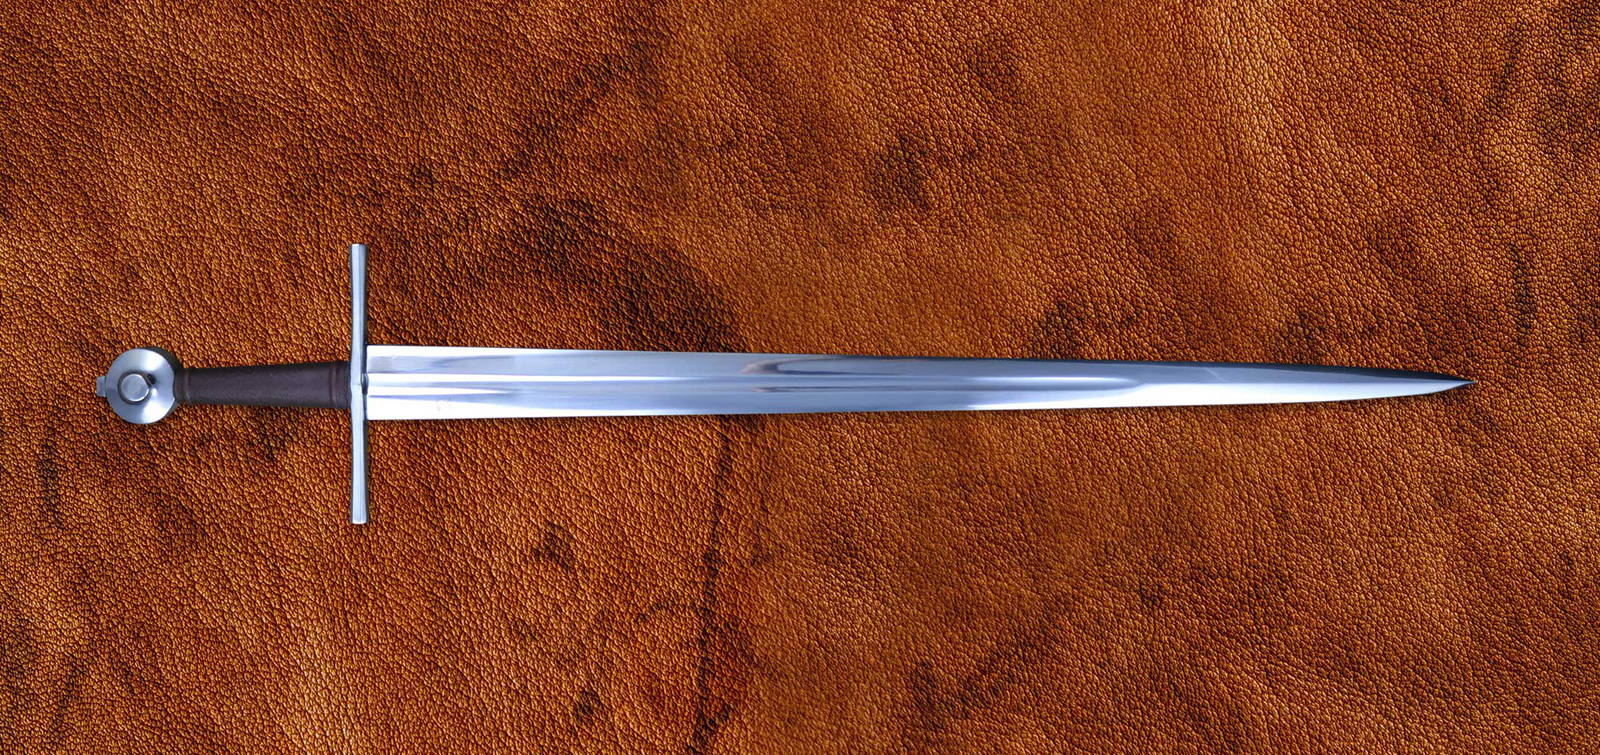 The Duke Sword